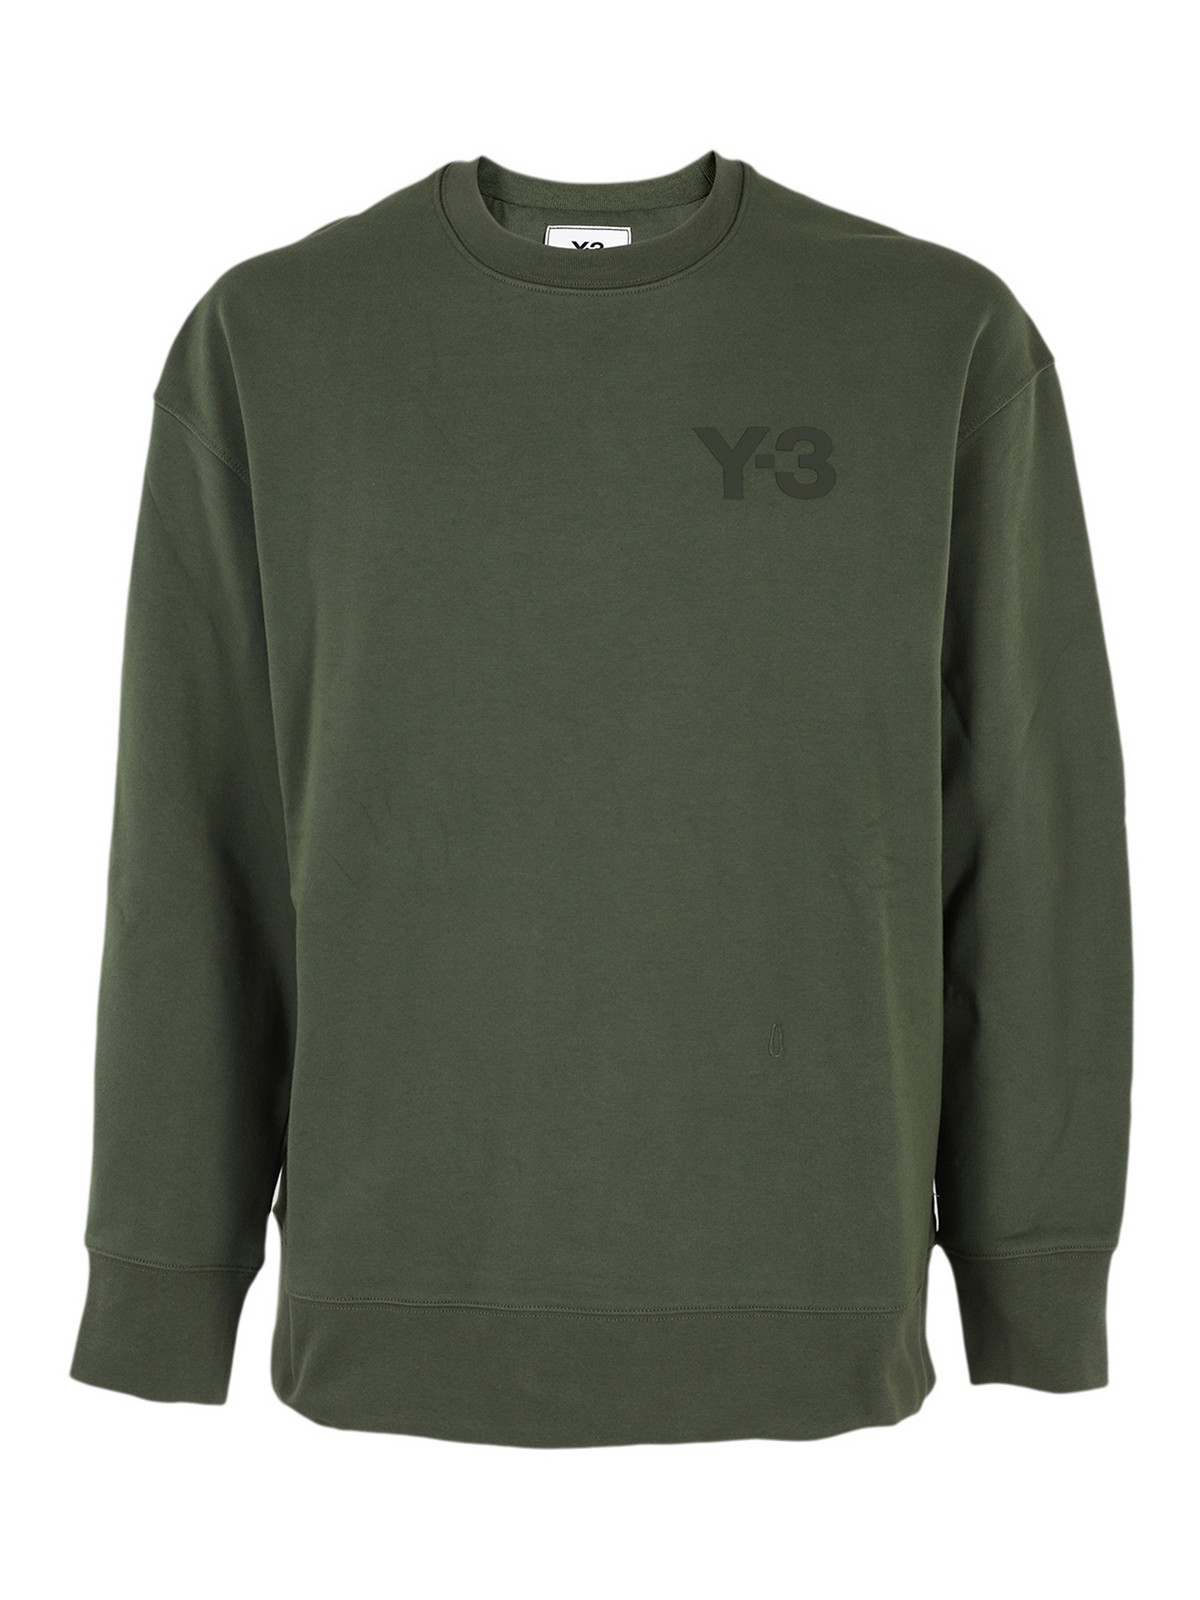 スウェット＆セーター Y-3 - スウェットシャツ/セーター - 緑 - HF7070